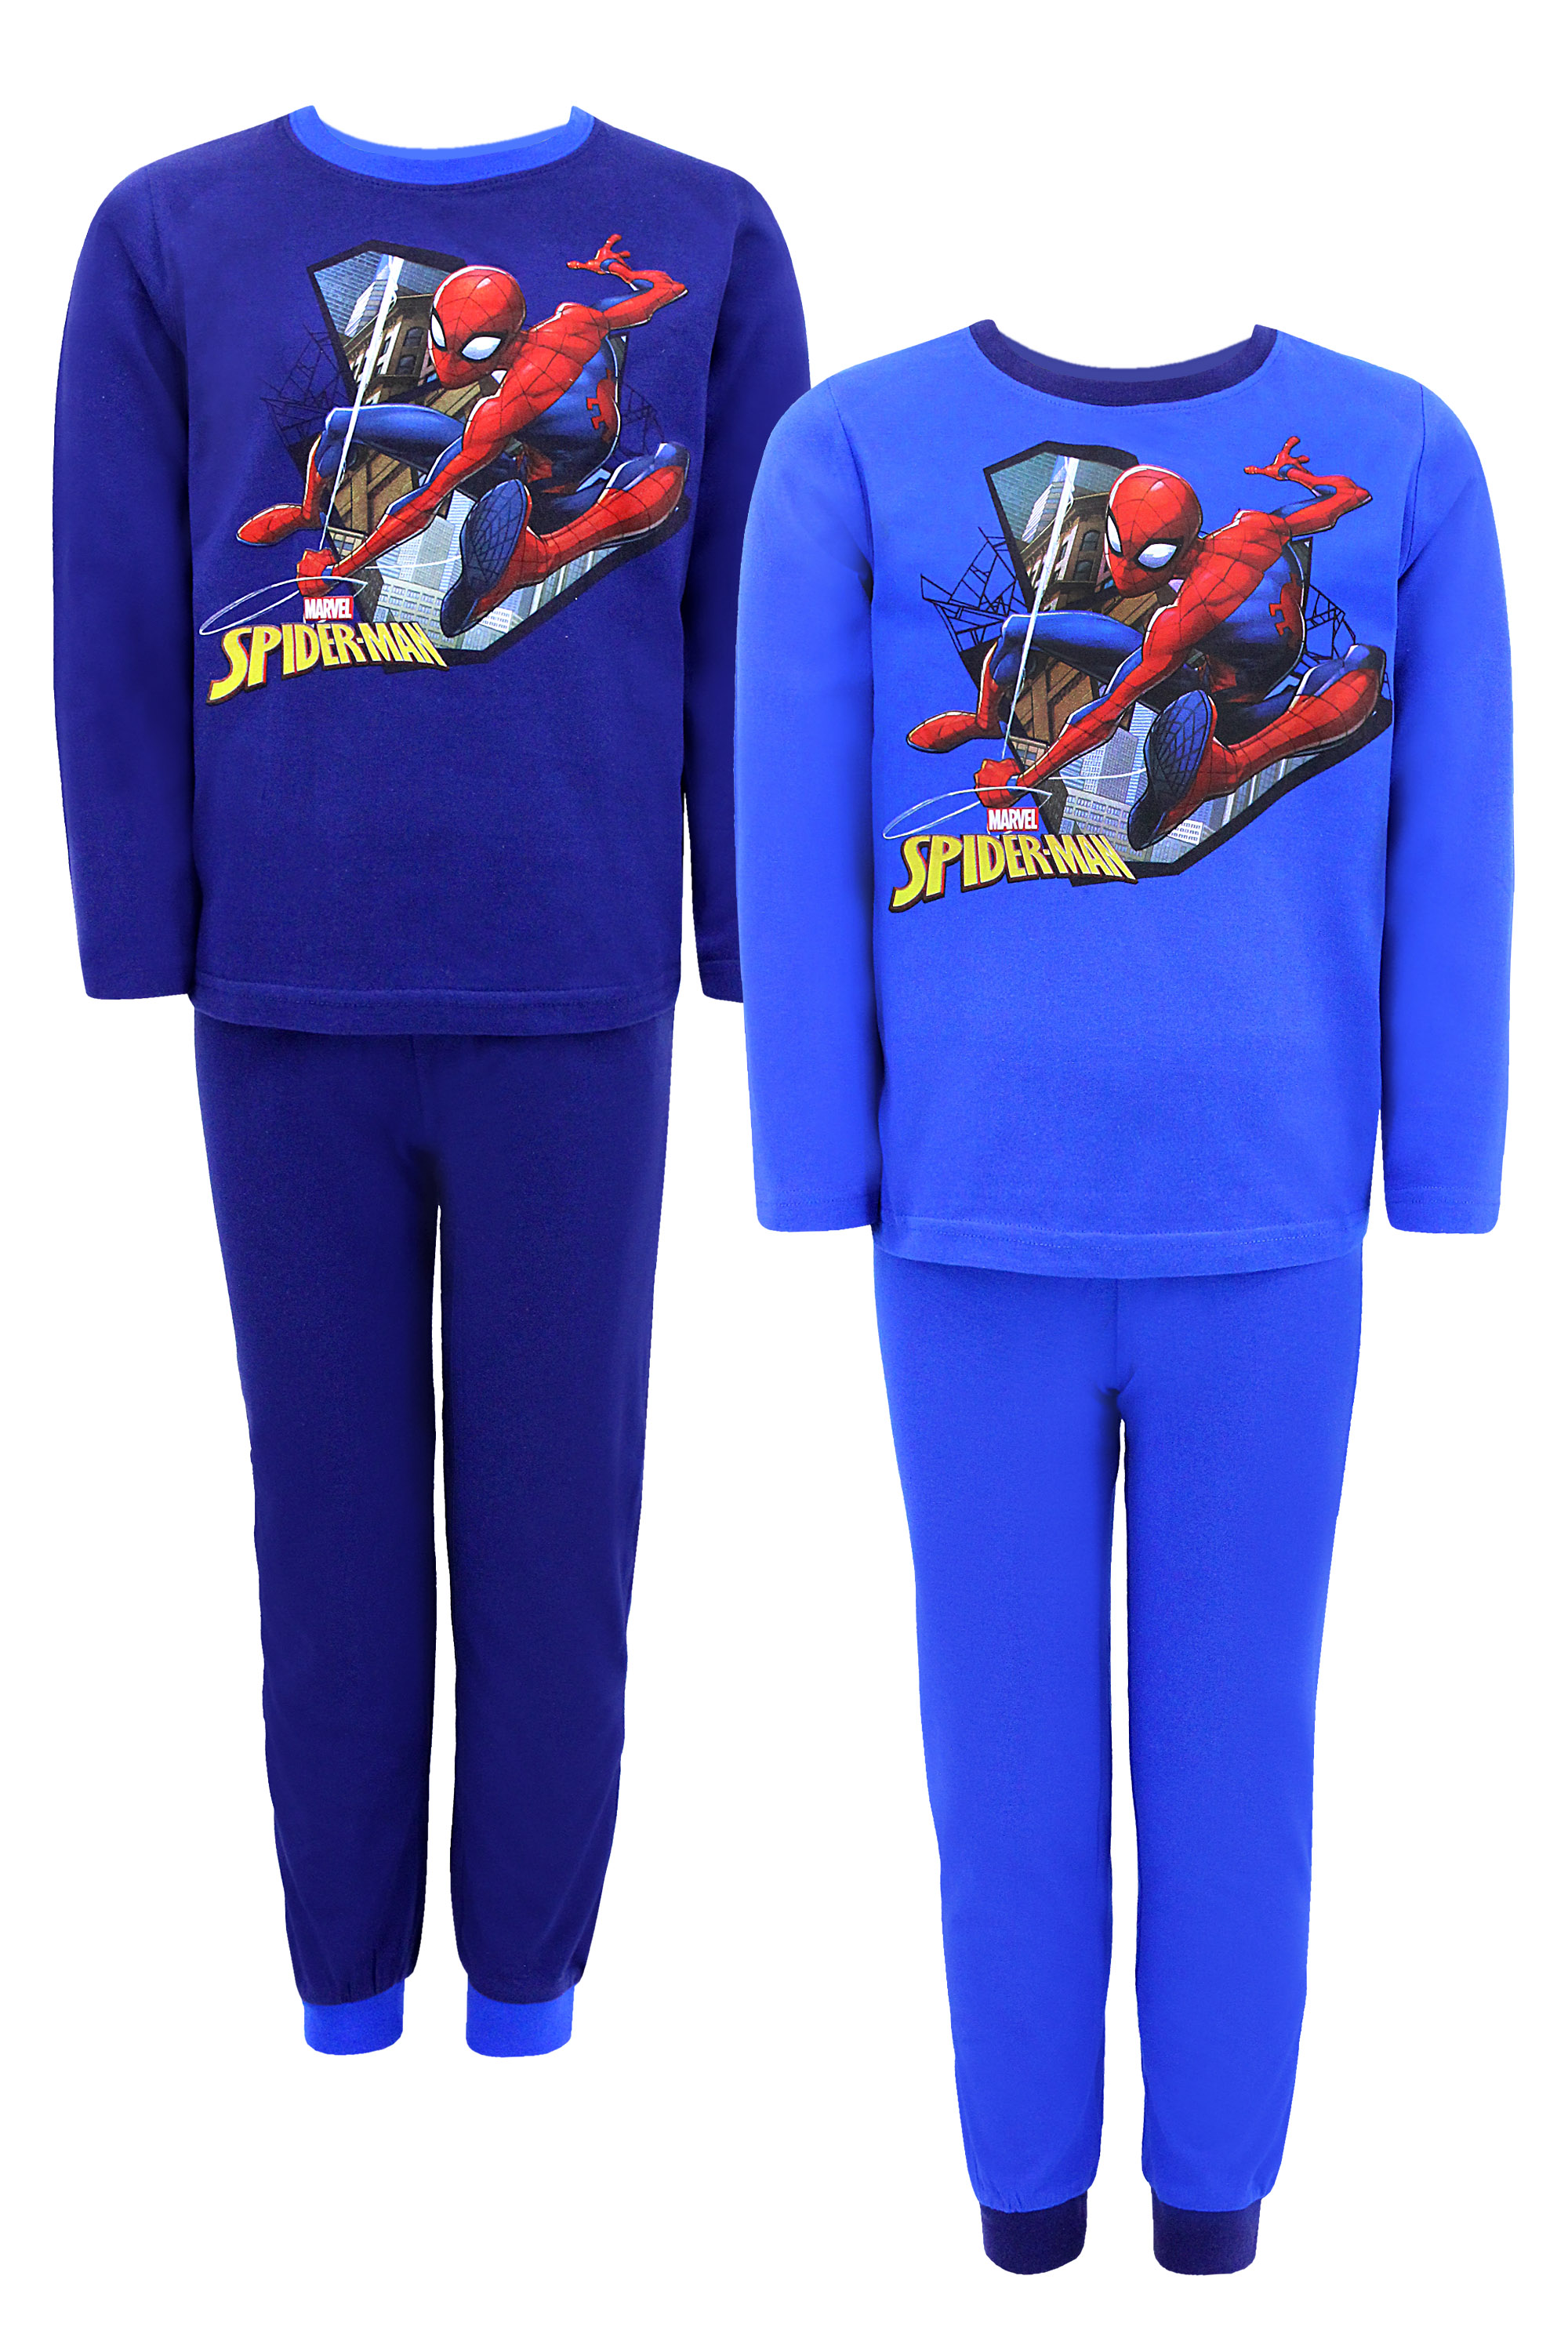 Levně Chlapecké pyžamo - SETINO Spider Man SP-573, modrá Barva: Modrá tmavě